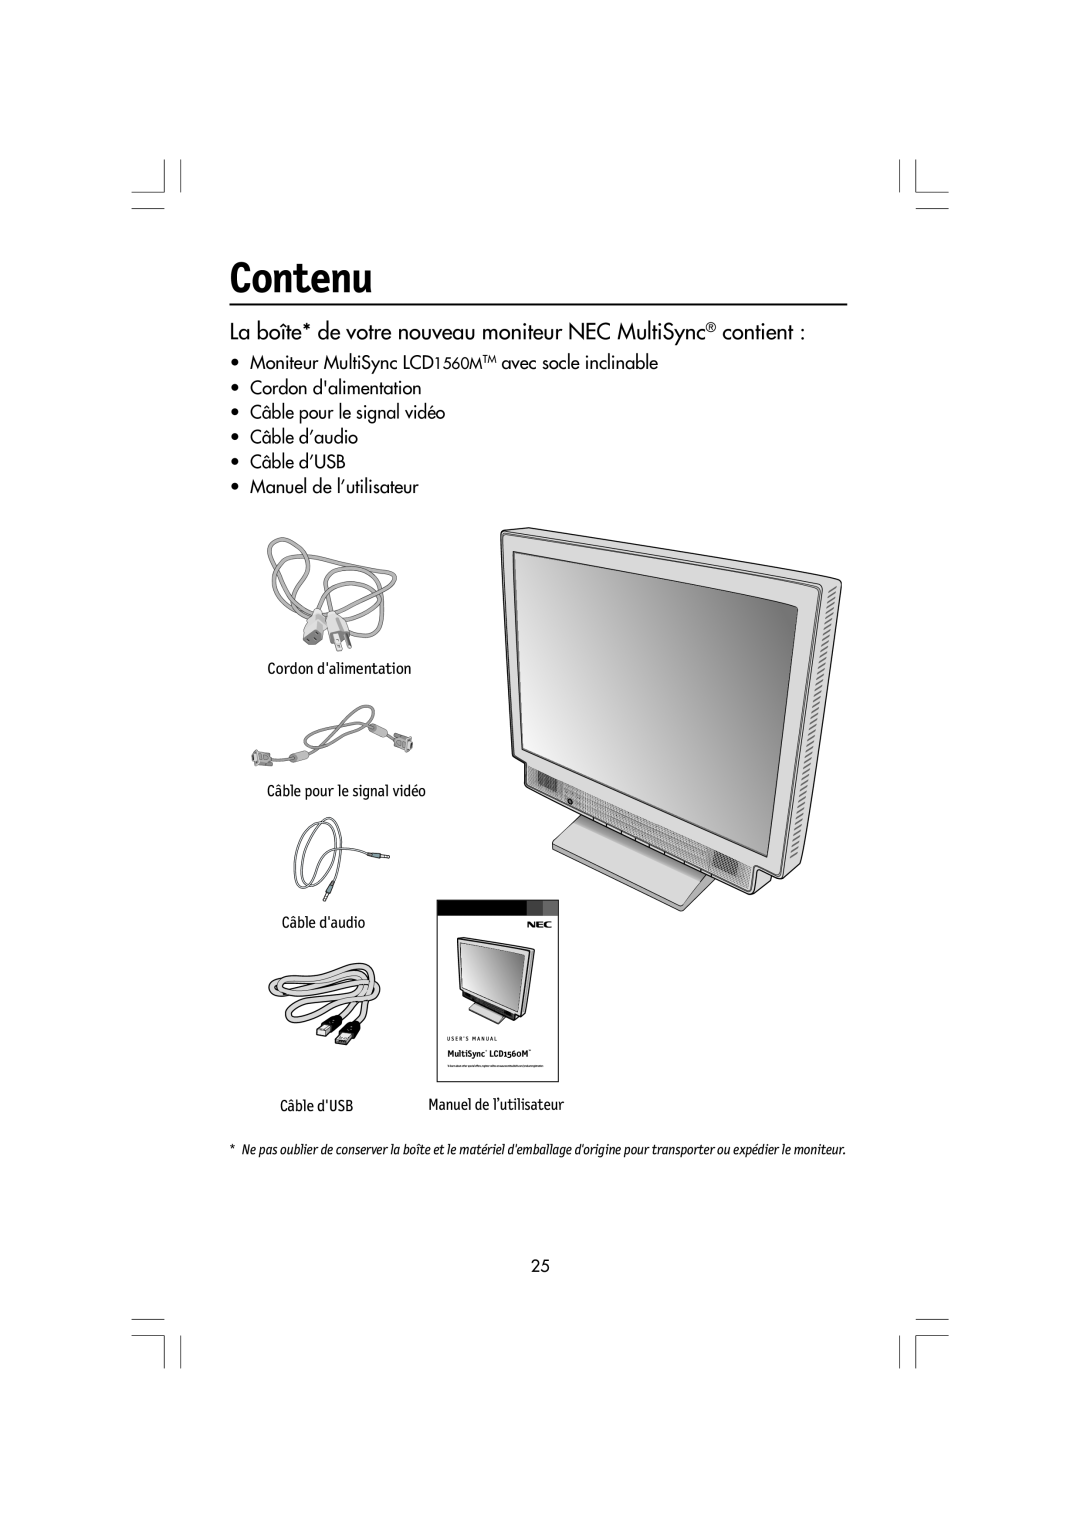 Mitsubishi Electronics manual Contenu, La boîte* de votre nouveau moniteur NEC MultiSync contient, MultiSync LCD1560M TM 